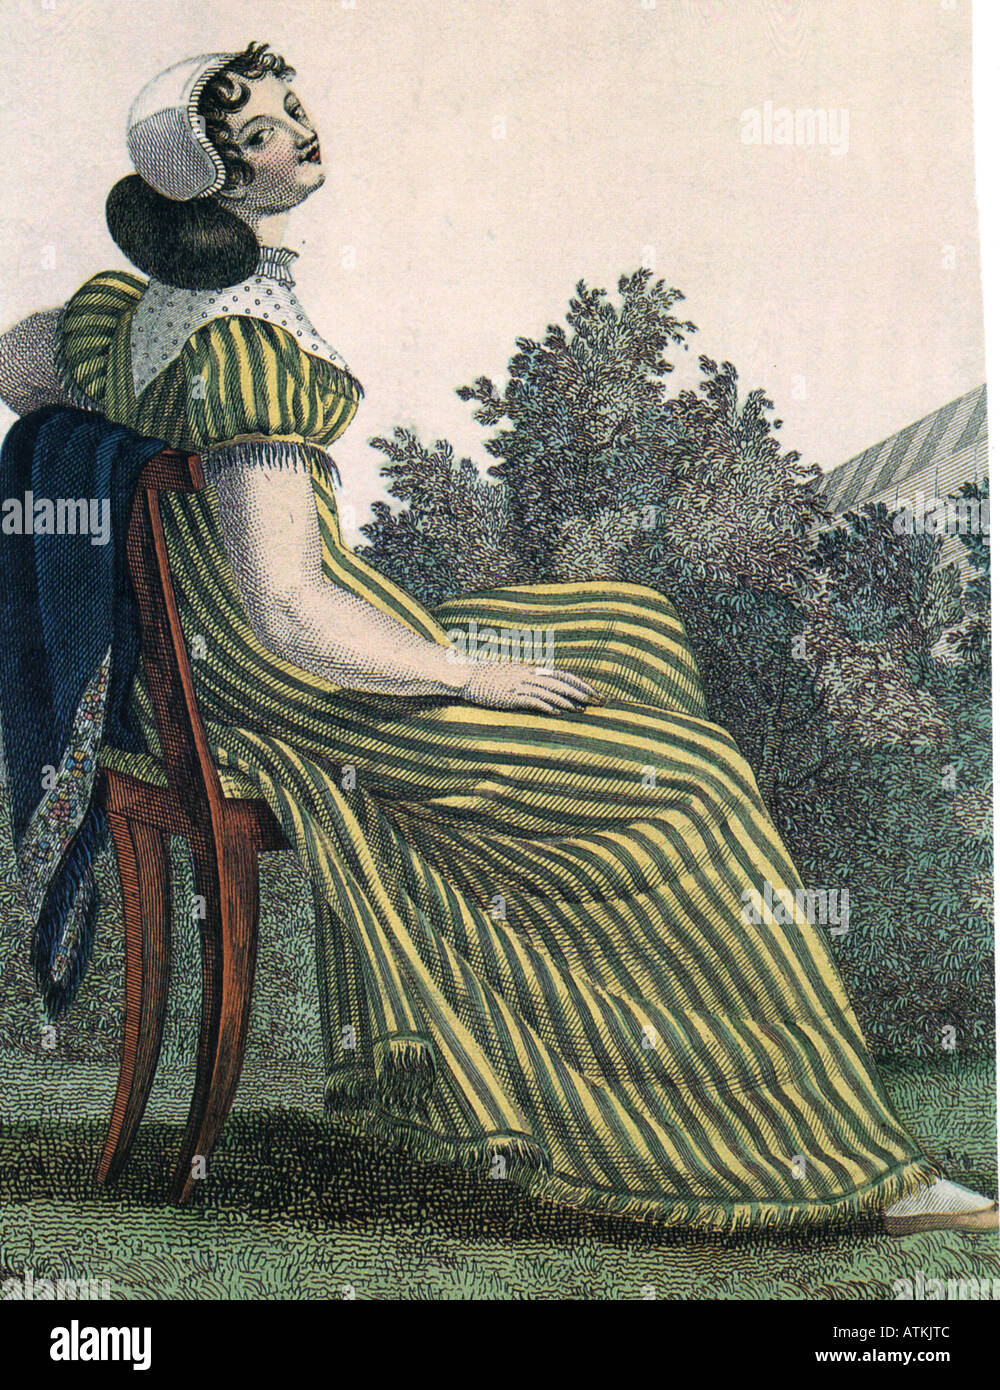 MADAME BOVARY Gravur aus einer frühen Ausgabe von Gustave Flaubert s Roman veröffentlichte zuerst im Jahre 1857 Stockfoto